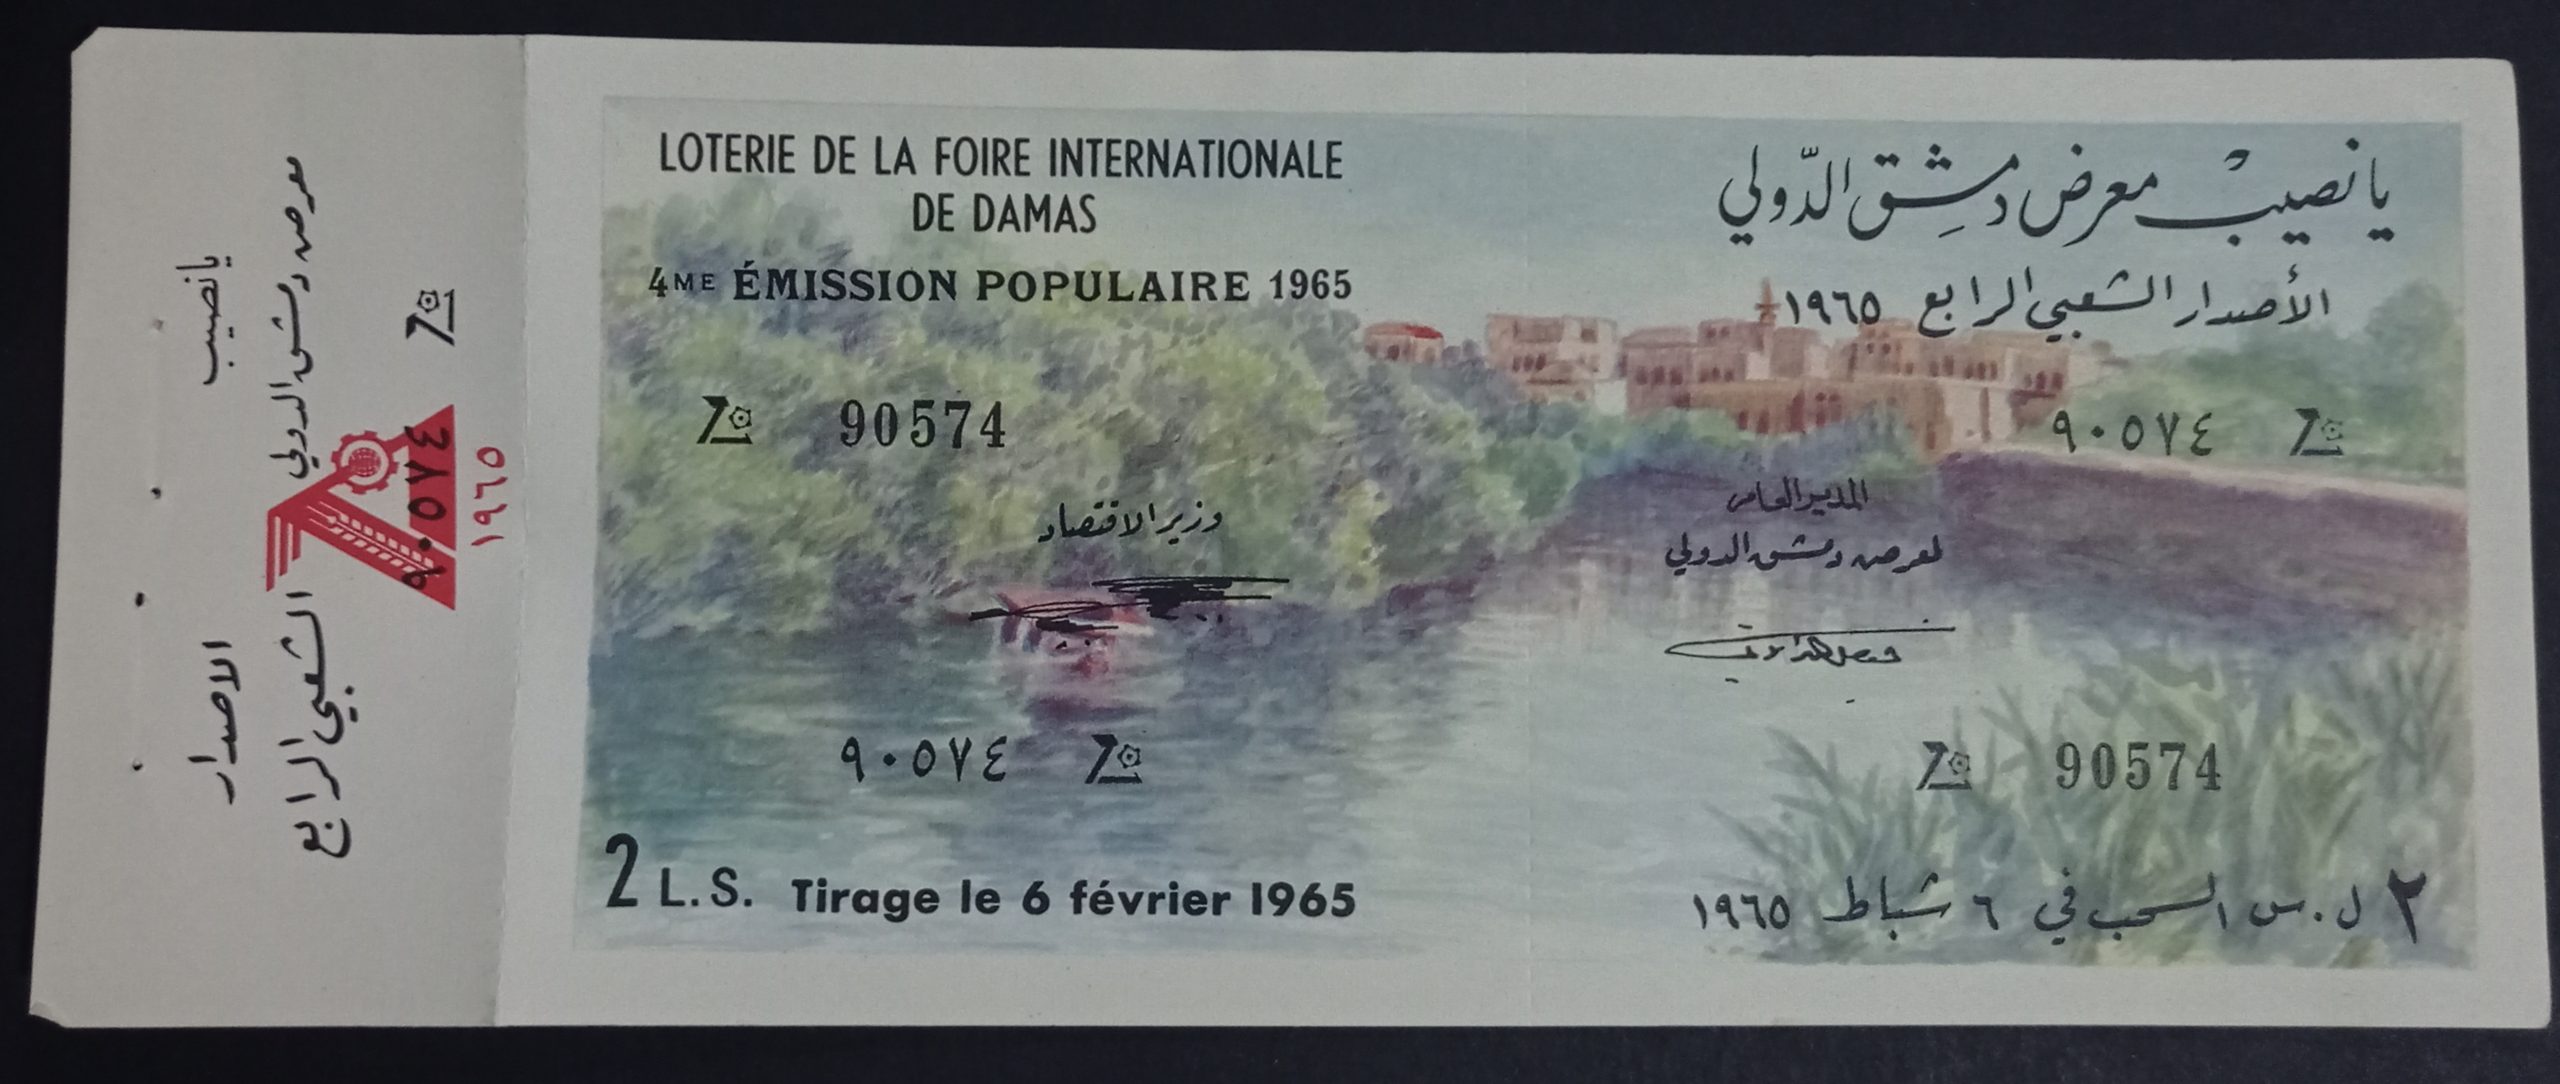 التاريخ السوري المعاصر - يانصيب معرض دمشق الدولي - الإصدار الشعبي الرابع عام 1965